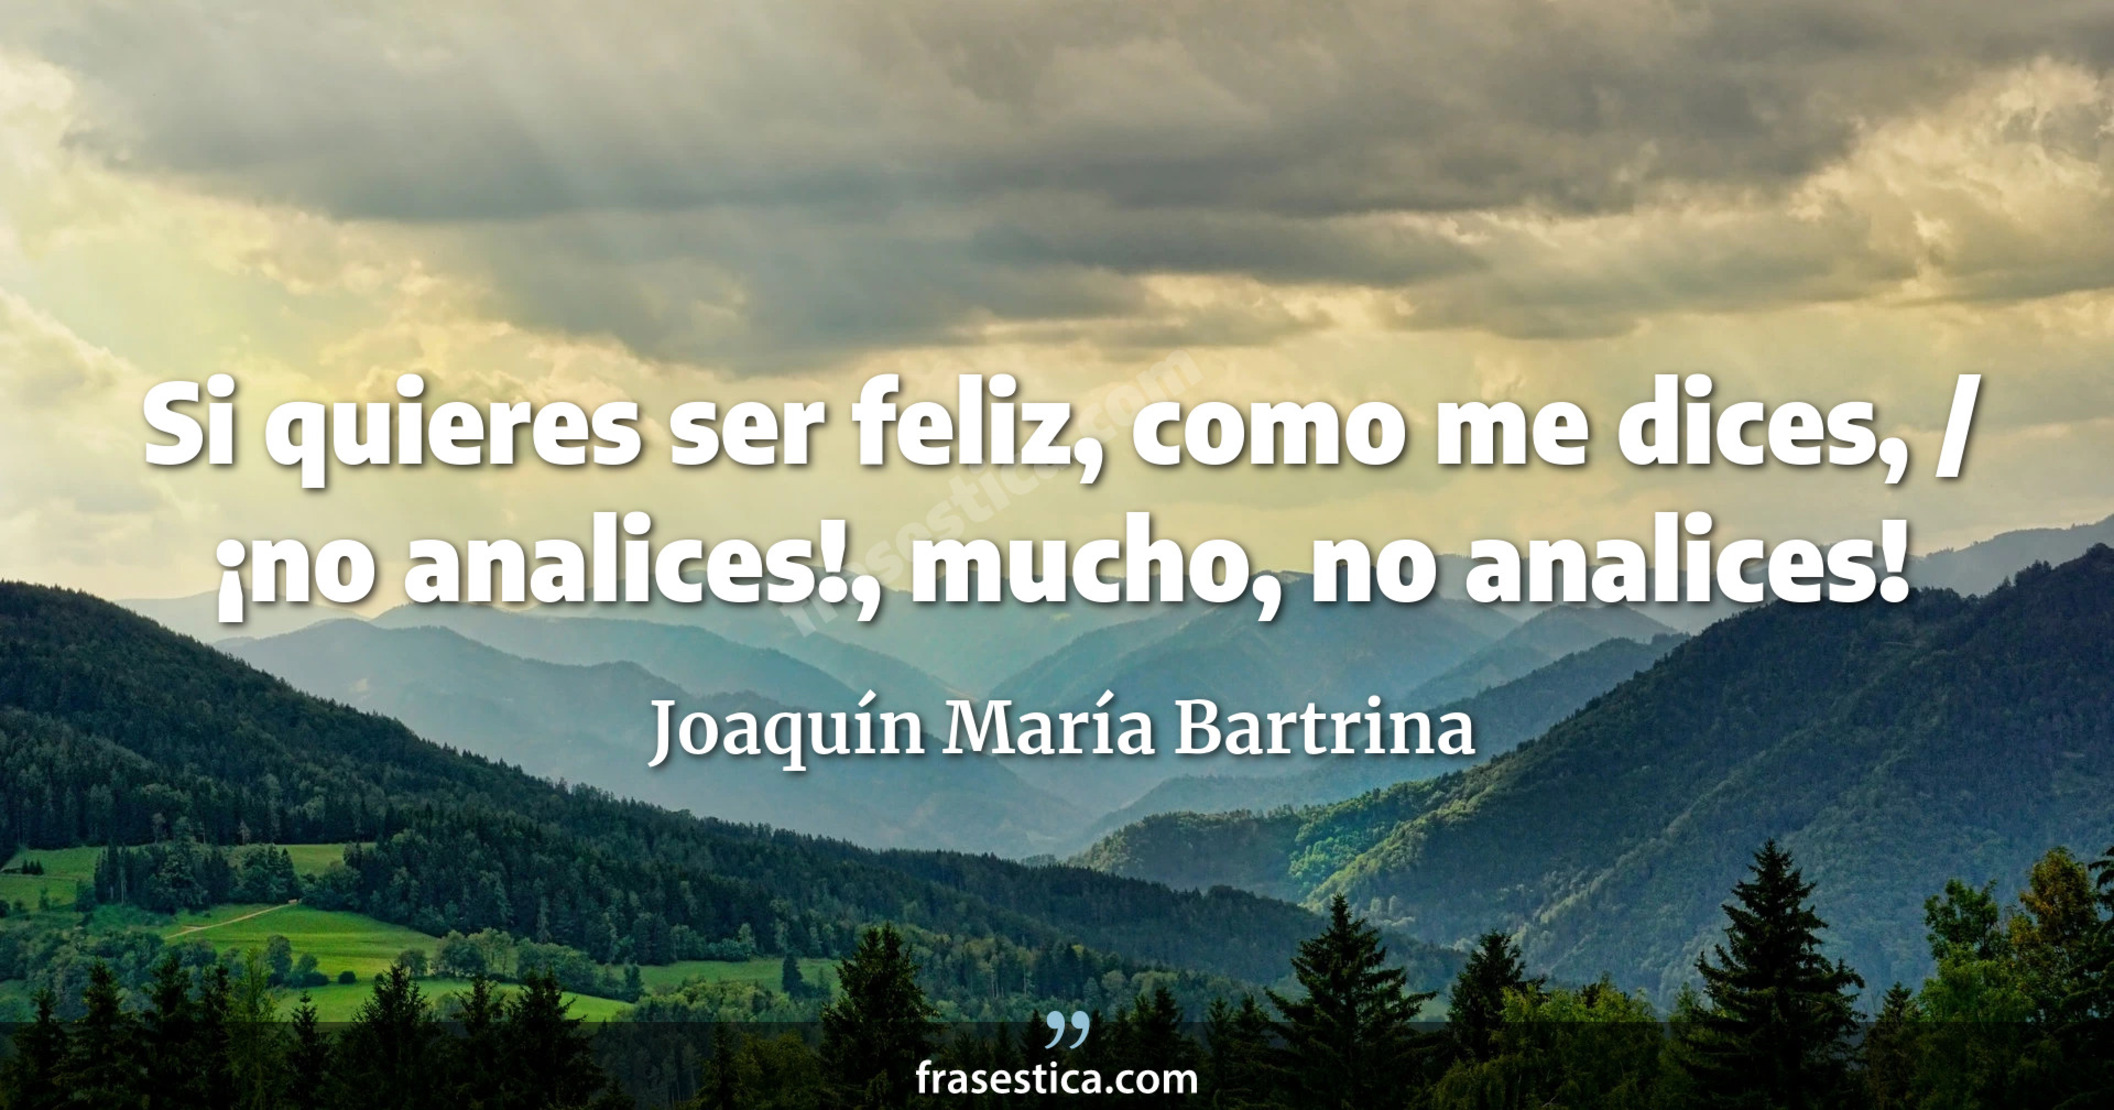 Si quieres ser feliz, como me dices, / ¡no analices!, mucho, no analices! - Joaquín María Bartrina